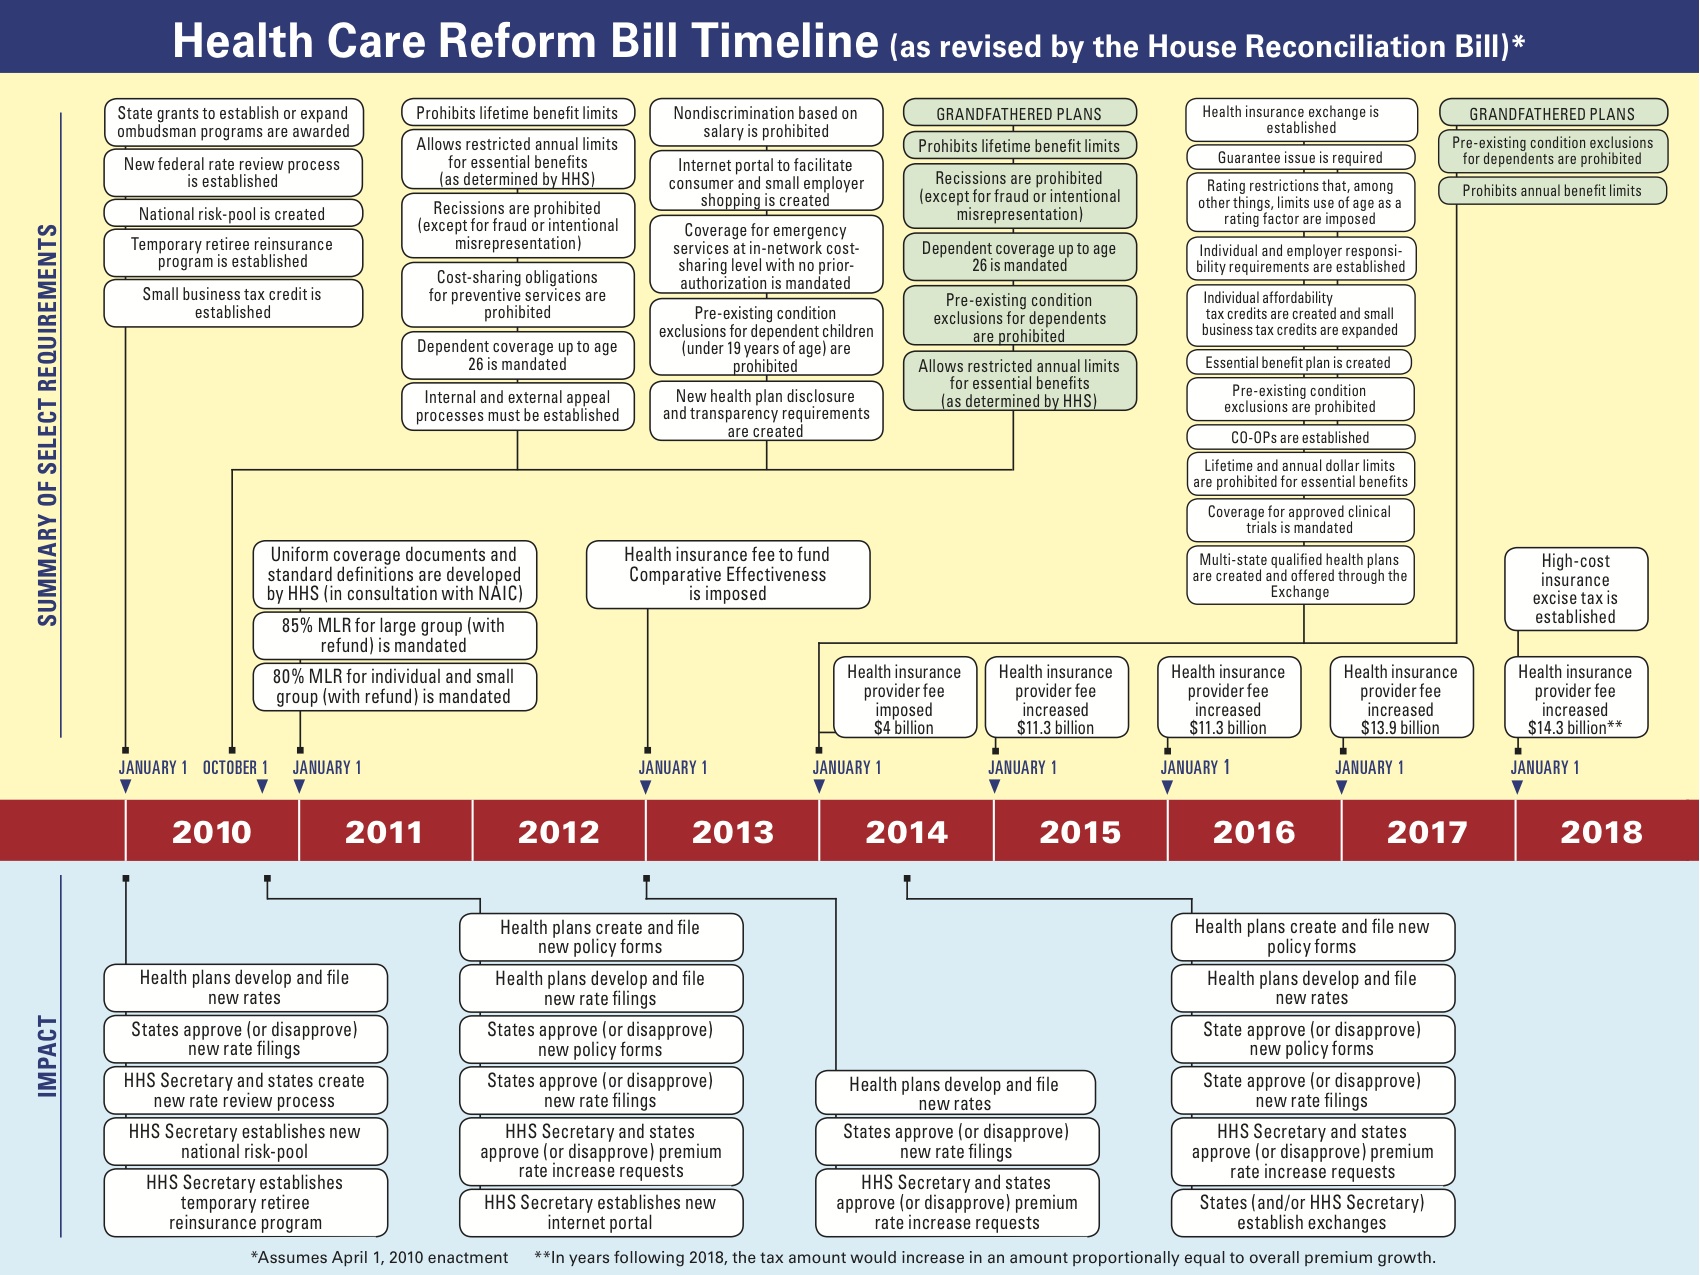 Health Care Reform Timeline 2014